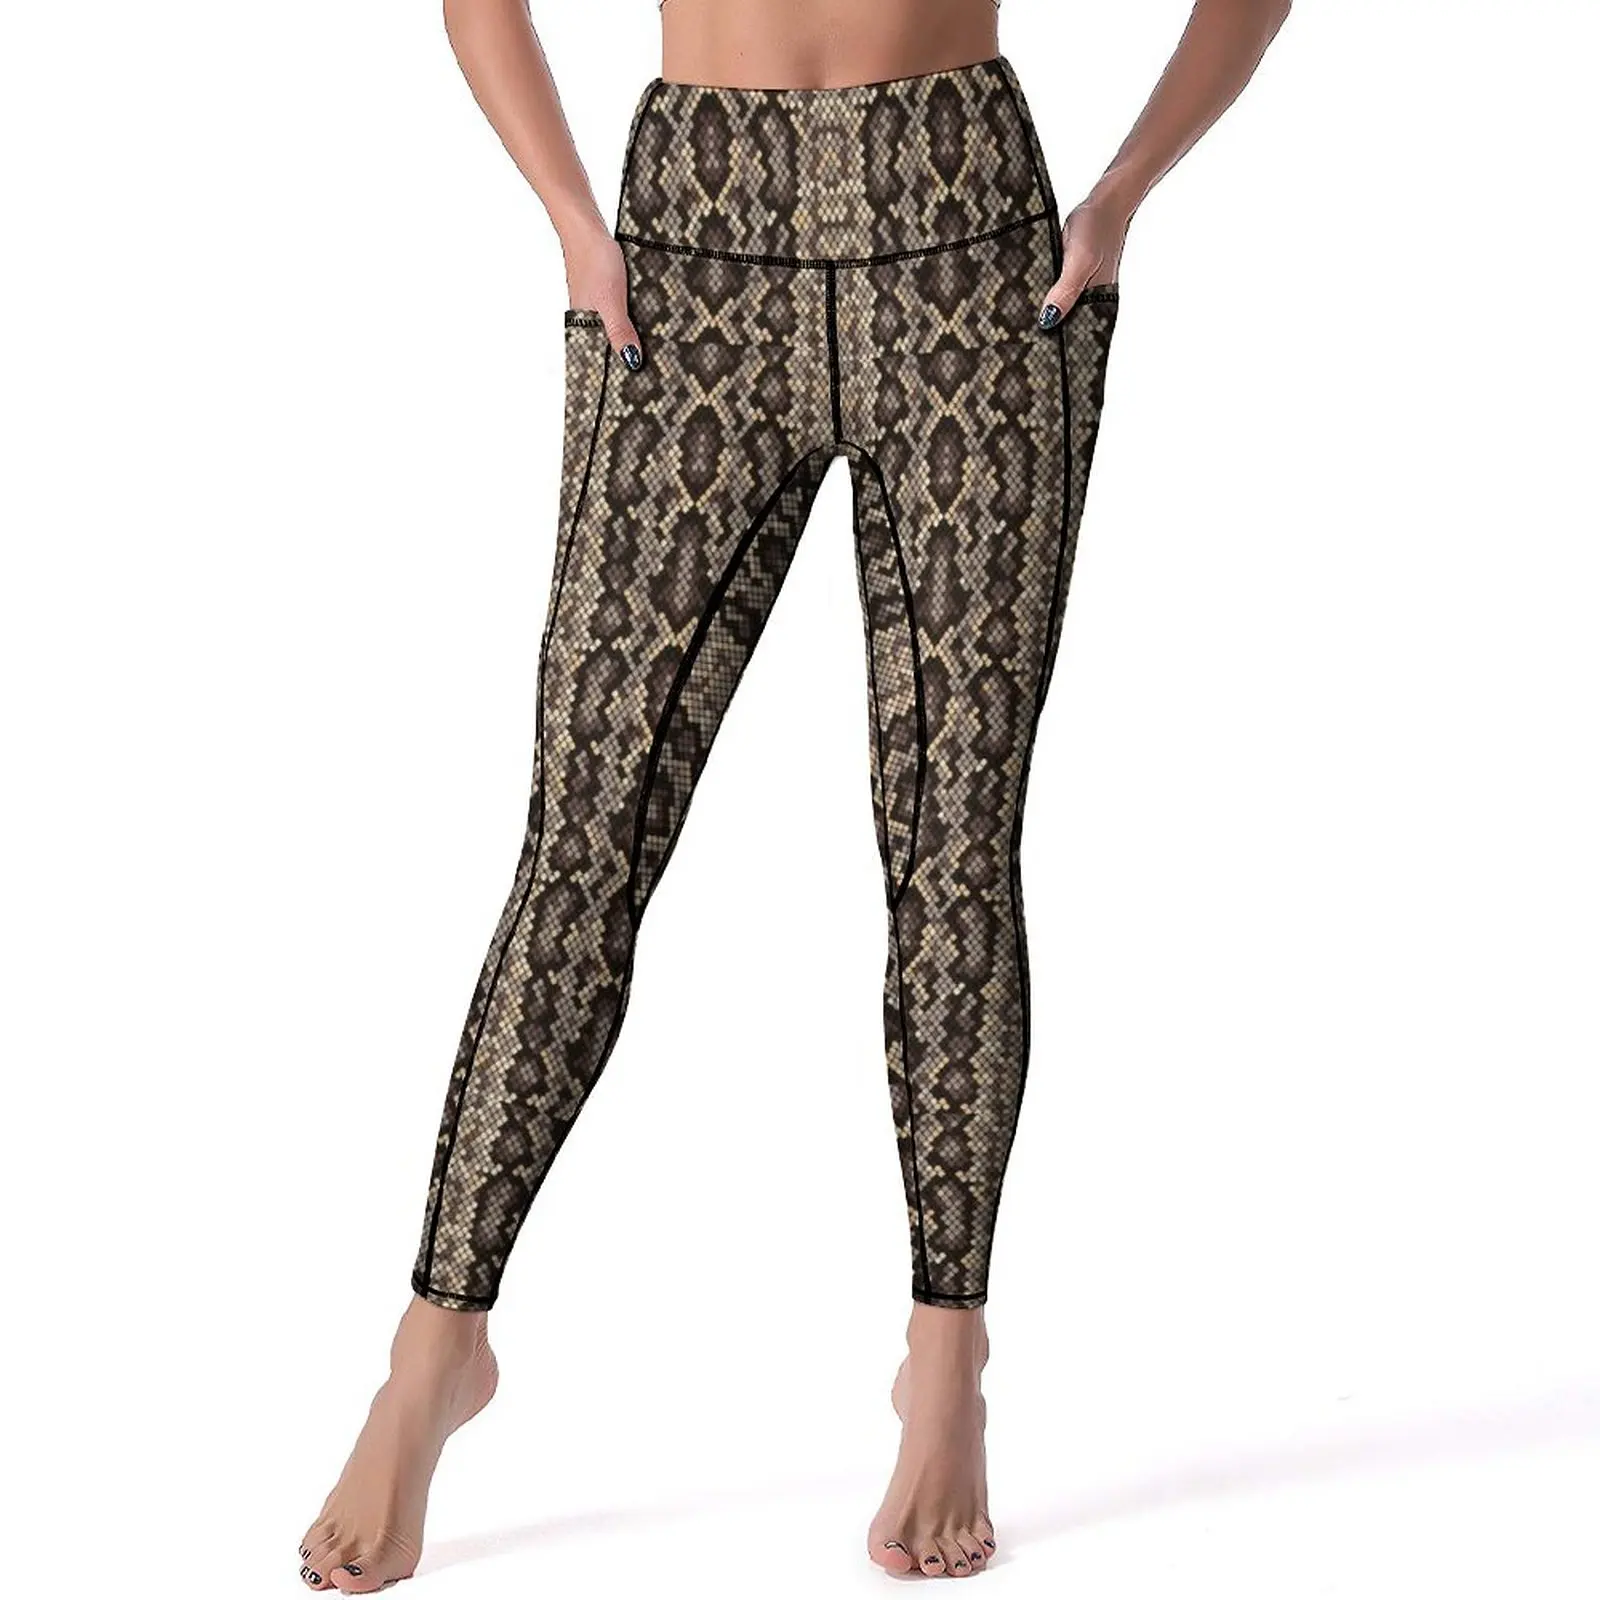 

Brown Snakeskin Leggings Animal Print Fitness Yoga Pants High Waist Casual Leggins Stretchy Design Sport Legging Gift